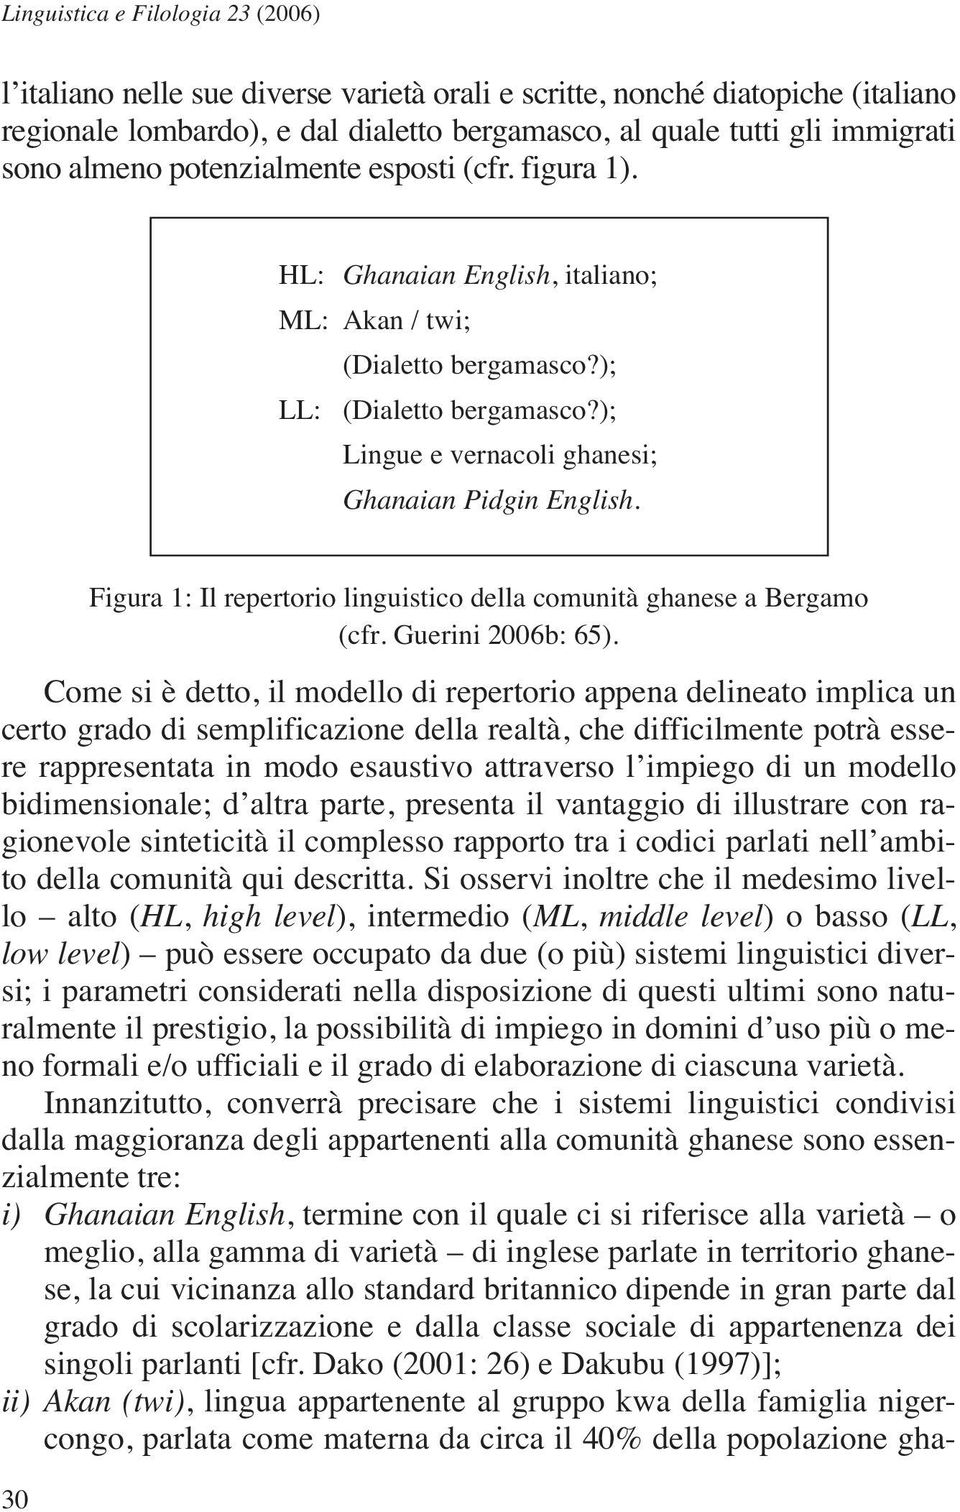 Figura 1: Il repertorio linguistico della comunità ghanese a Bergamo (cfr. Guerini 2006b: 65).